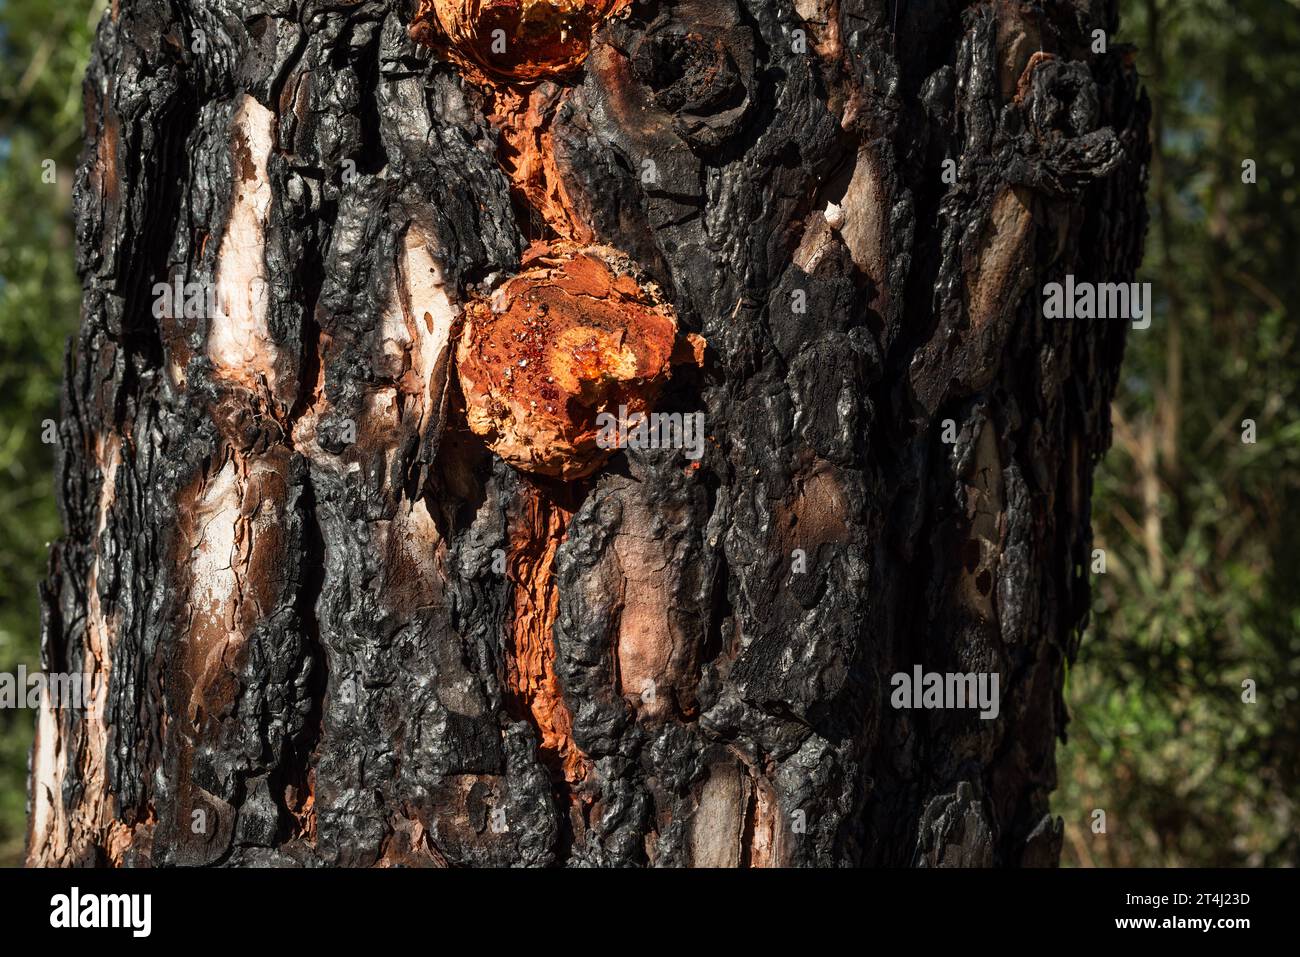 Écorce avec résine orange de pins canariens indigènes (Pinus canariensis) qui ont été brûlés dans un feu de forêt et sont maintenant en train de récupérer, Chinyero, Tenerife Banque D'Images